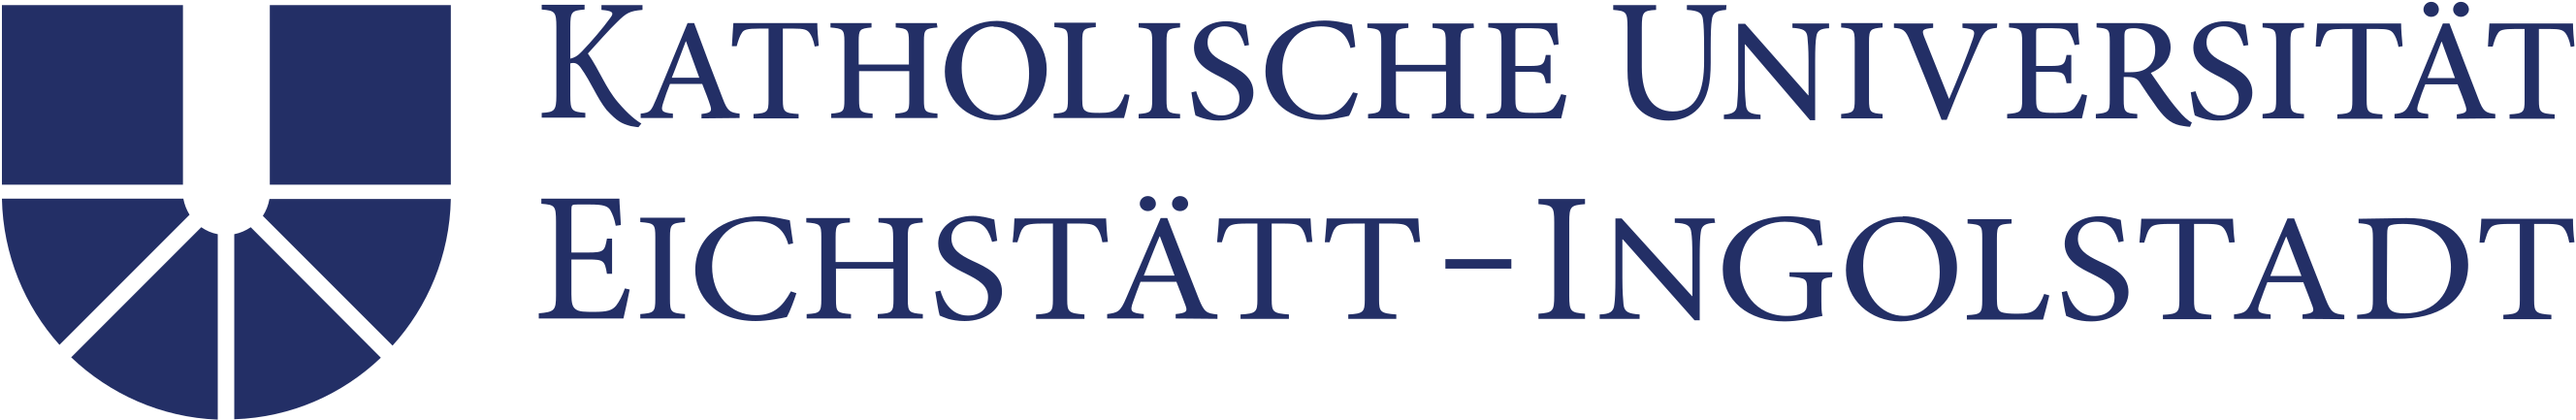 Католический университет Айхштетта логотип.png